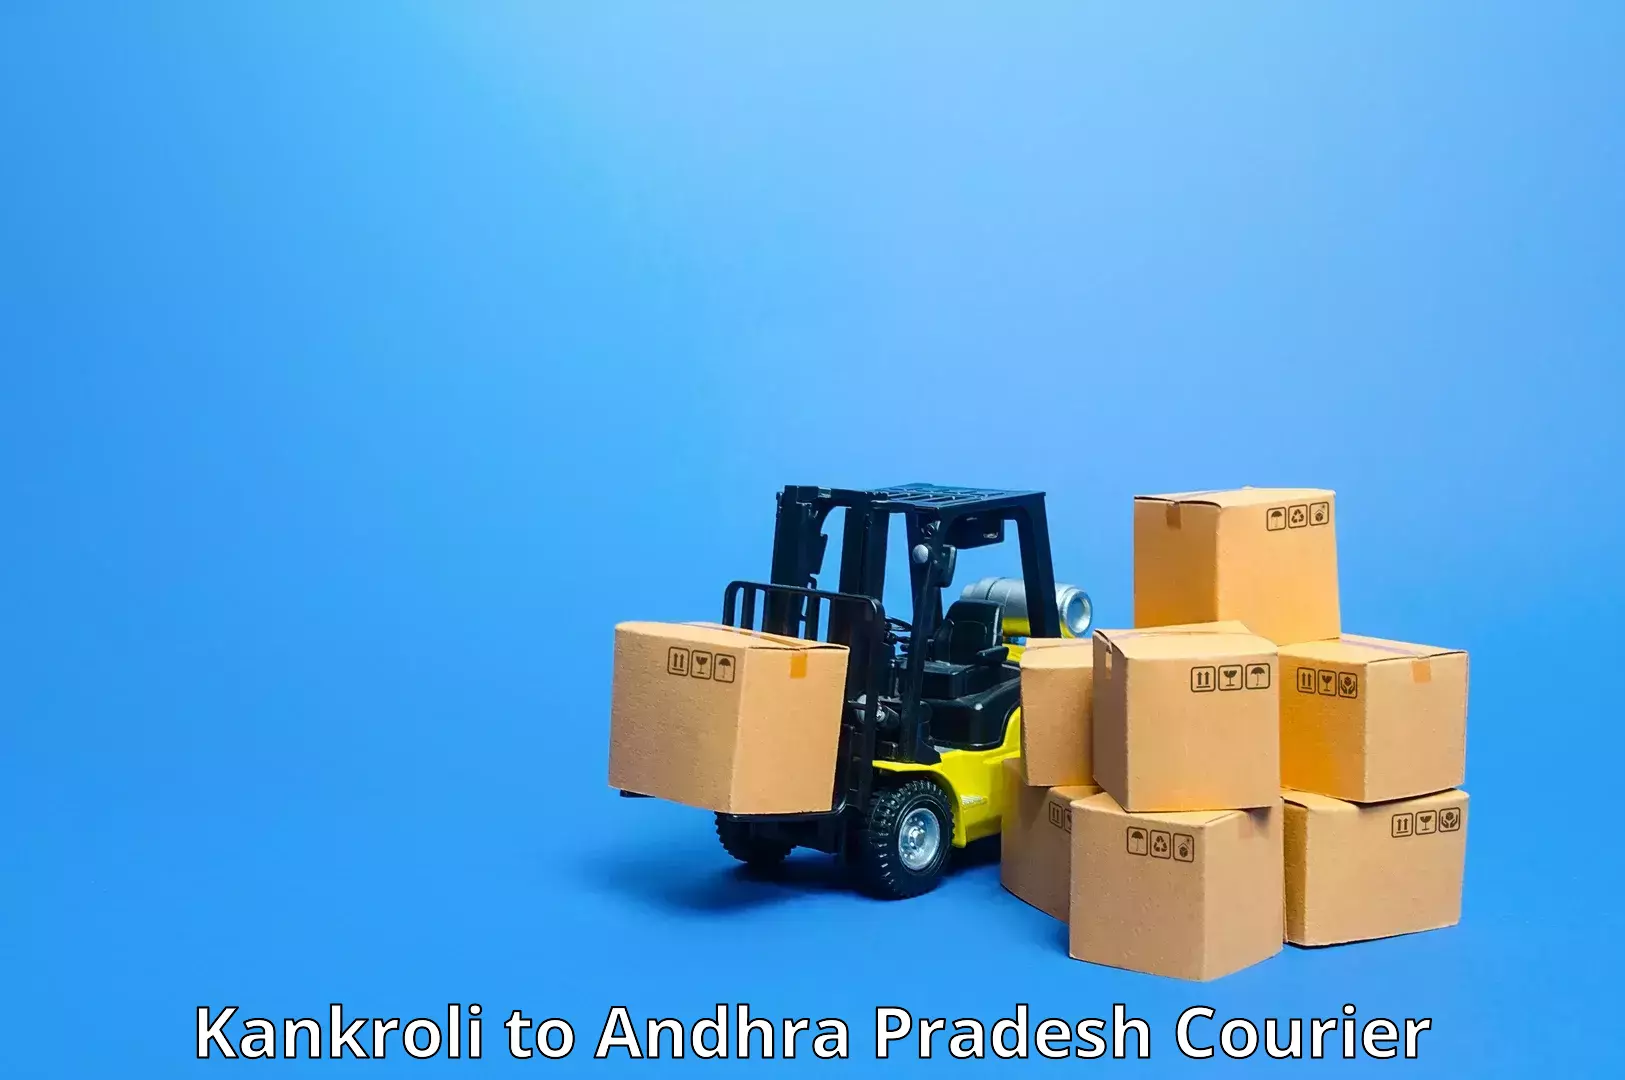 Customizable shipping options Kankroli to Dachepalle